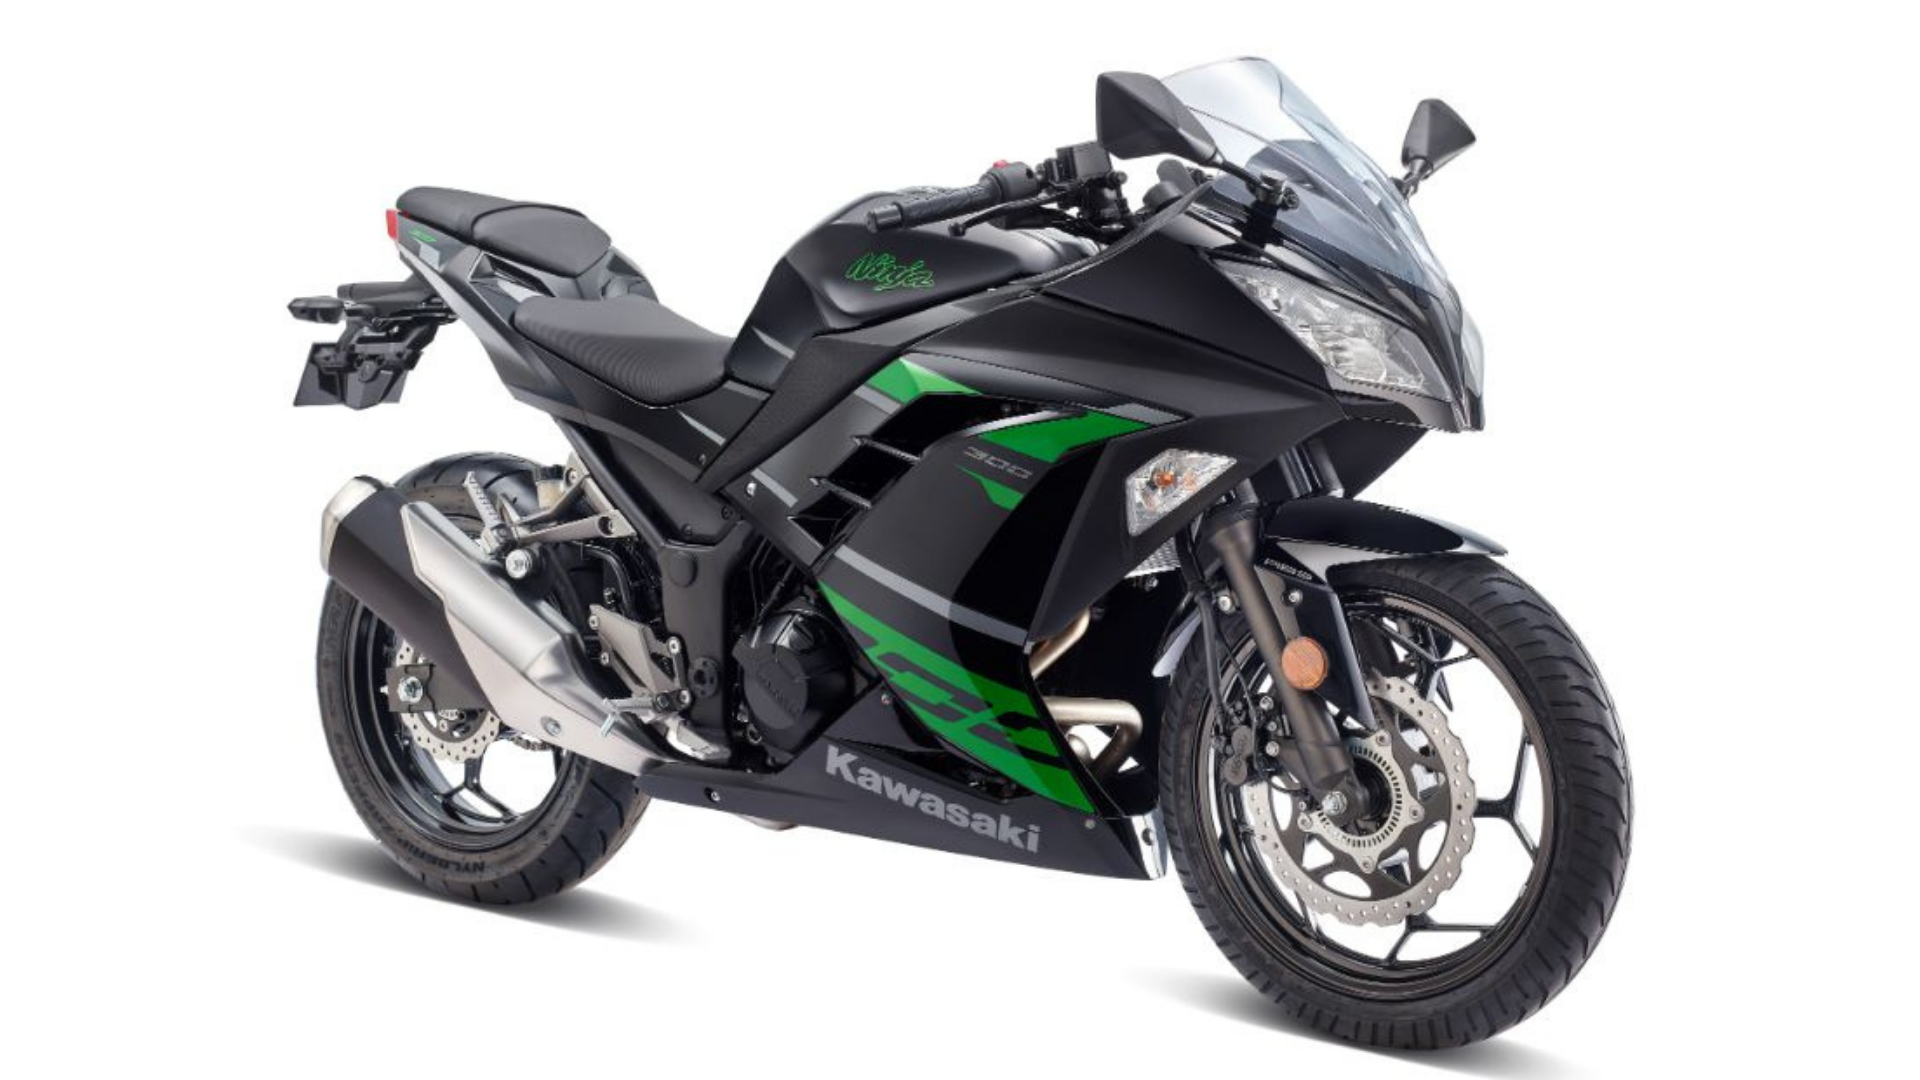 2022 Kawasaki Ninja 300 Updated